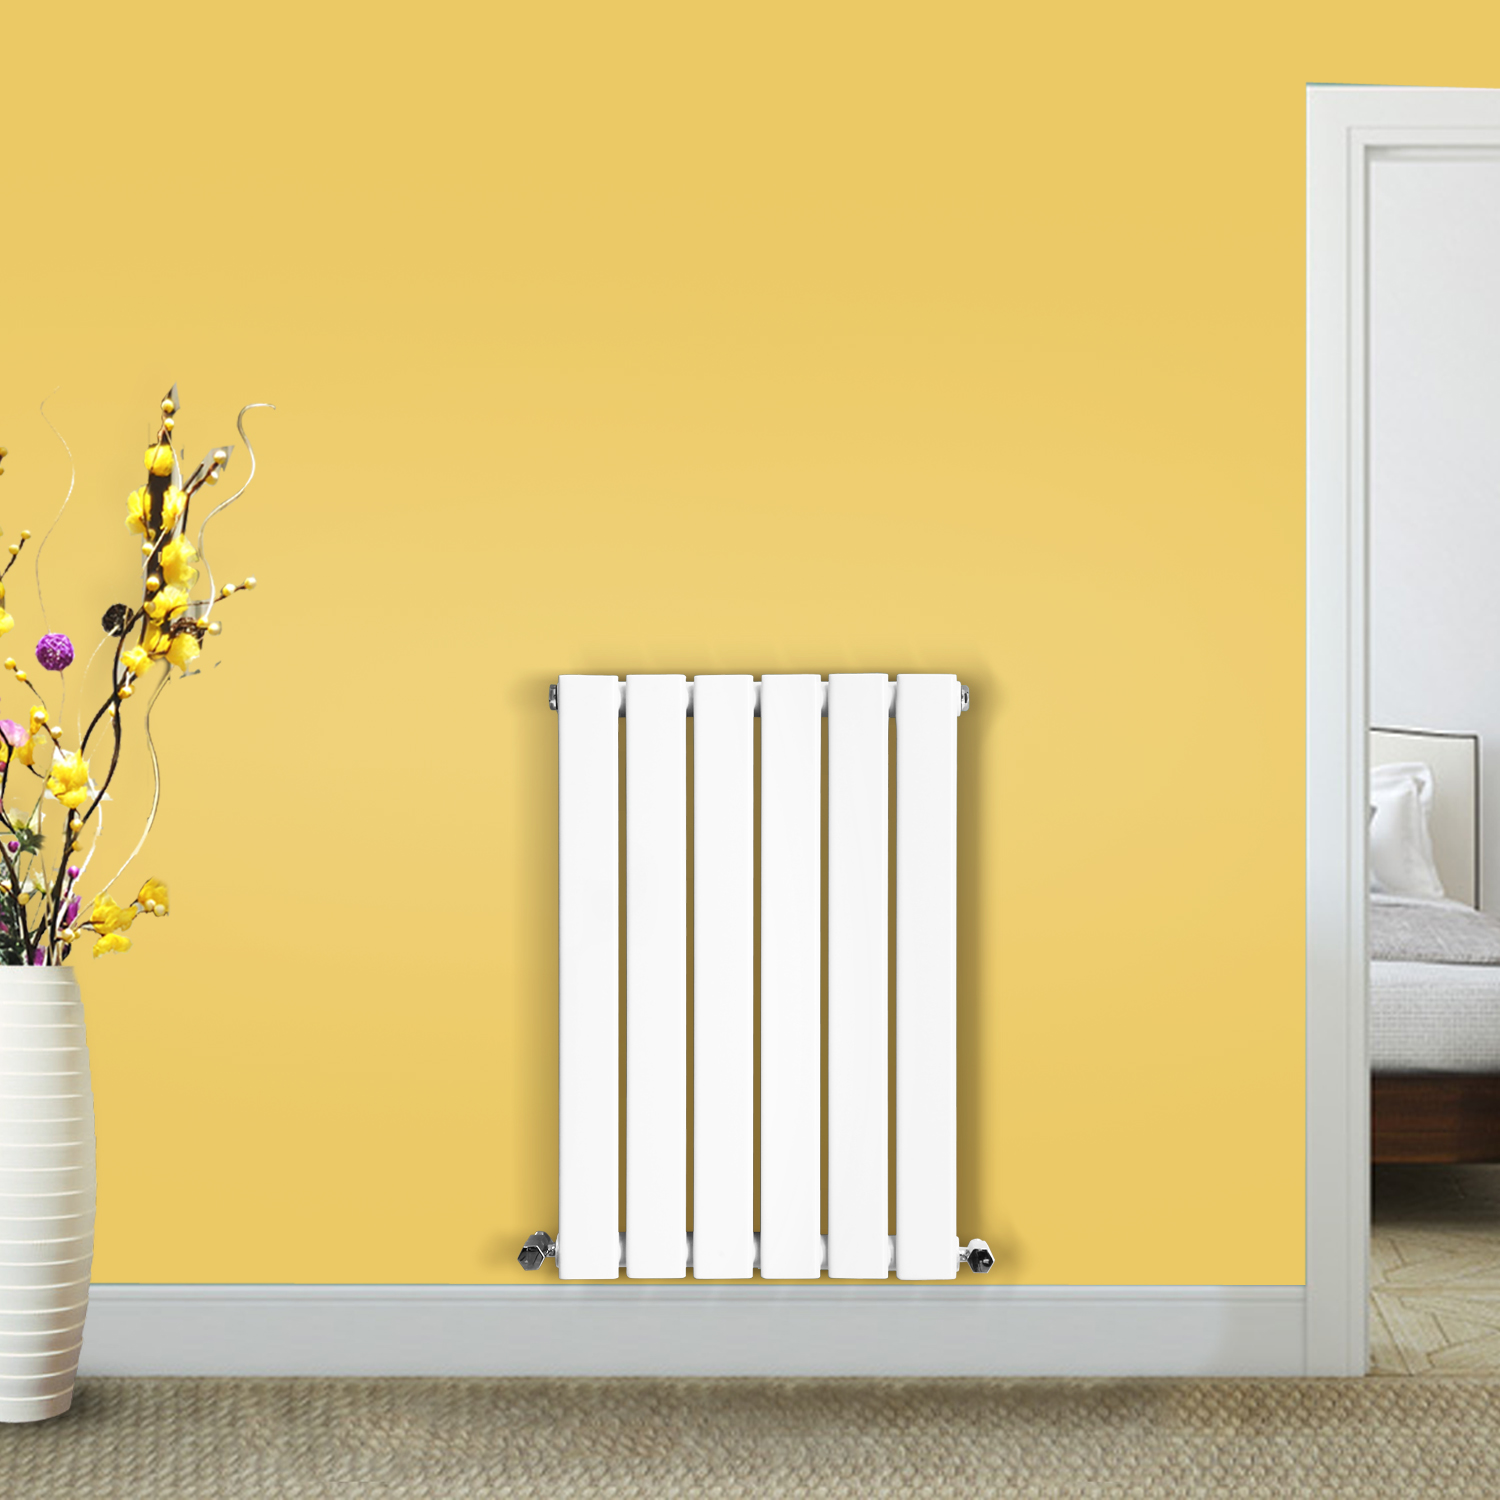 Радиатор flat. Column Vertical Single радиатор. Home Heat радиаторы 250х600. Панель для радиатора. Радиатор одиночный.